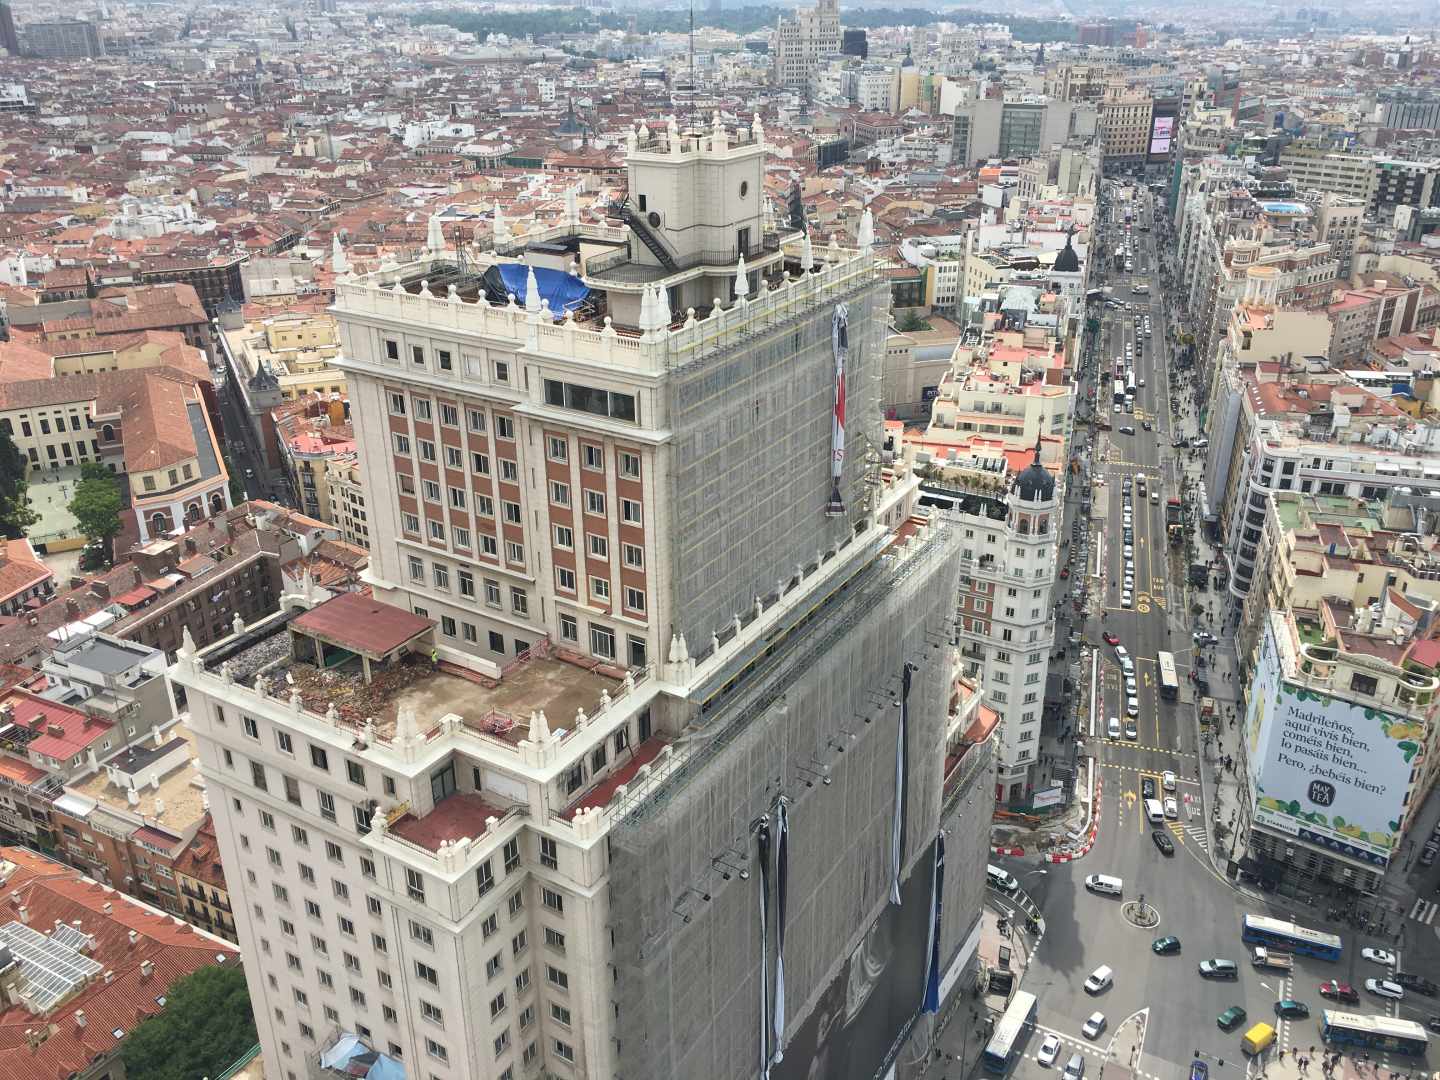 El Edificio España, en Madrid.